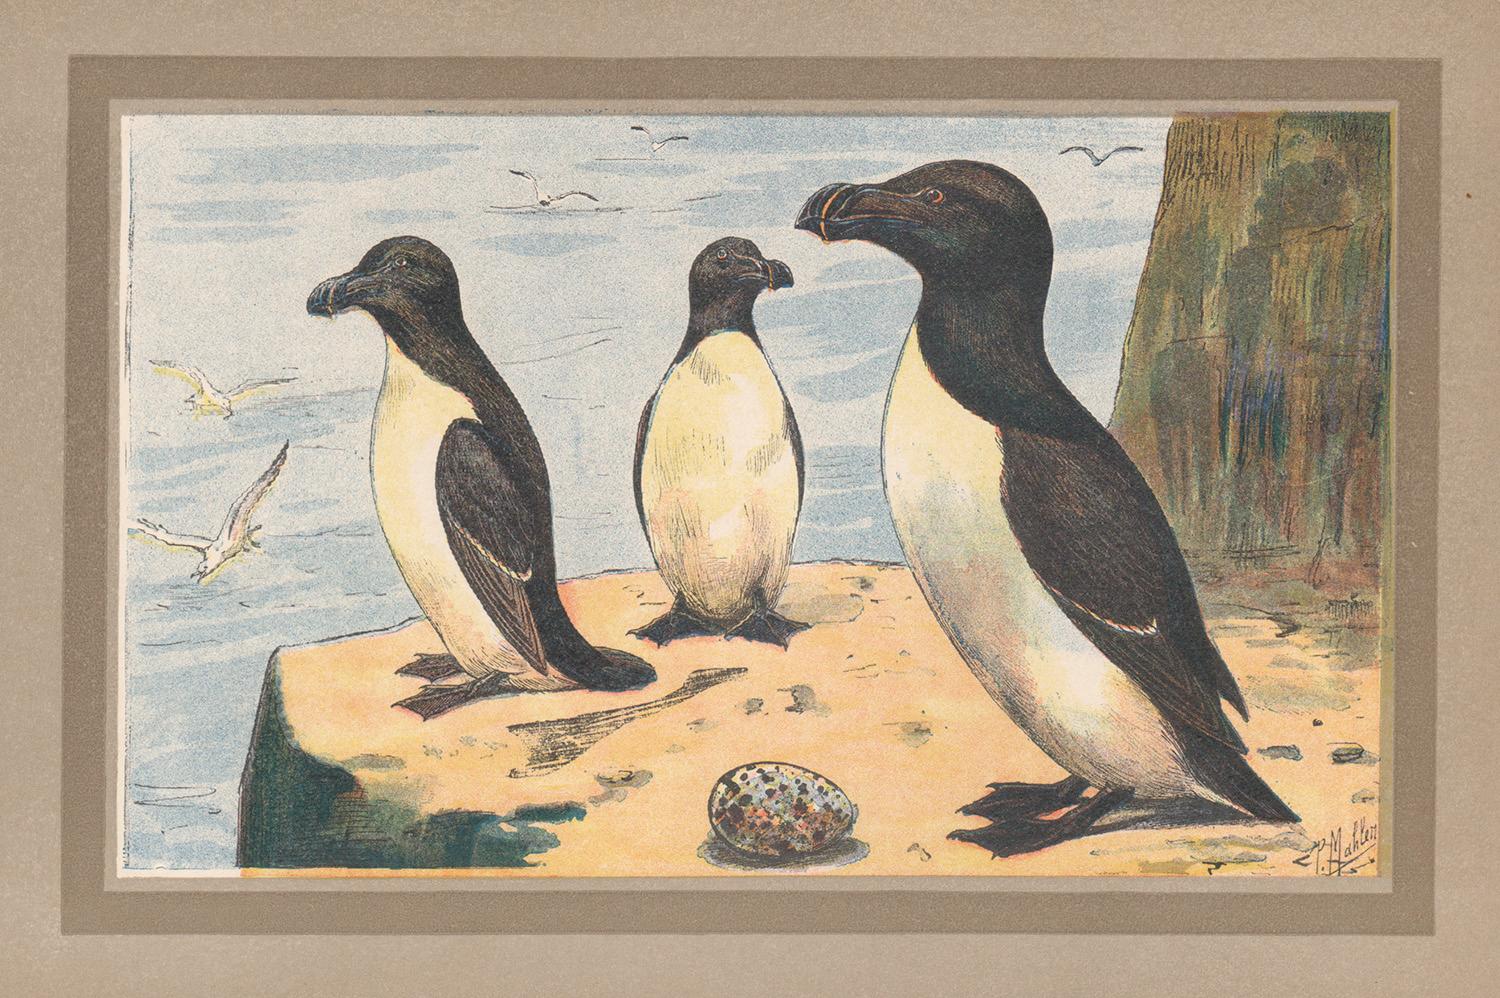 Animal Print Unknown - Razorbill Auk, illustration d'art français d'histoire naturelle et d'oiseaux marins anciennes